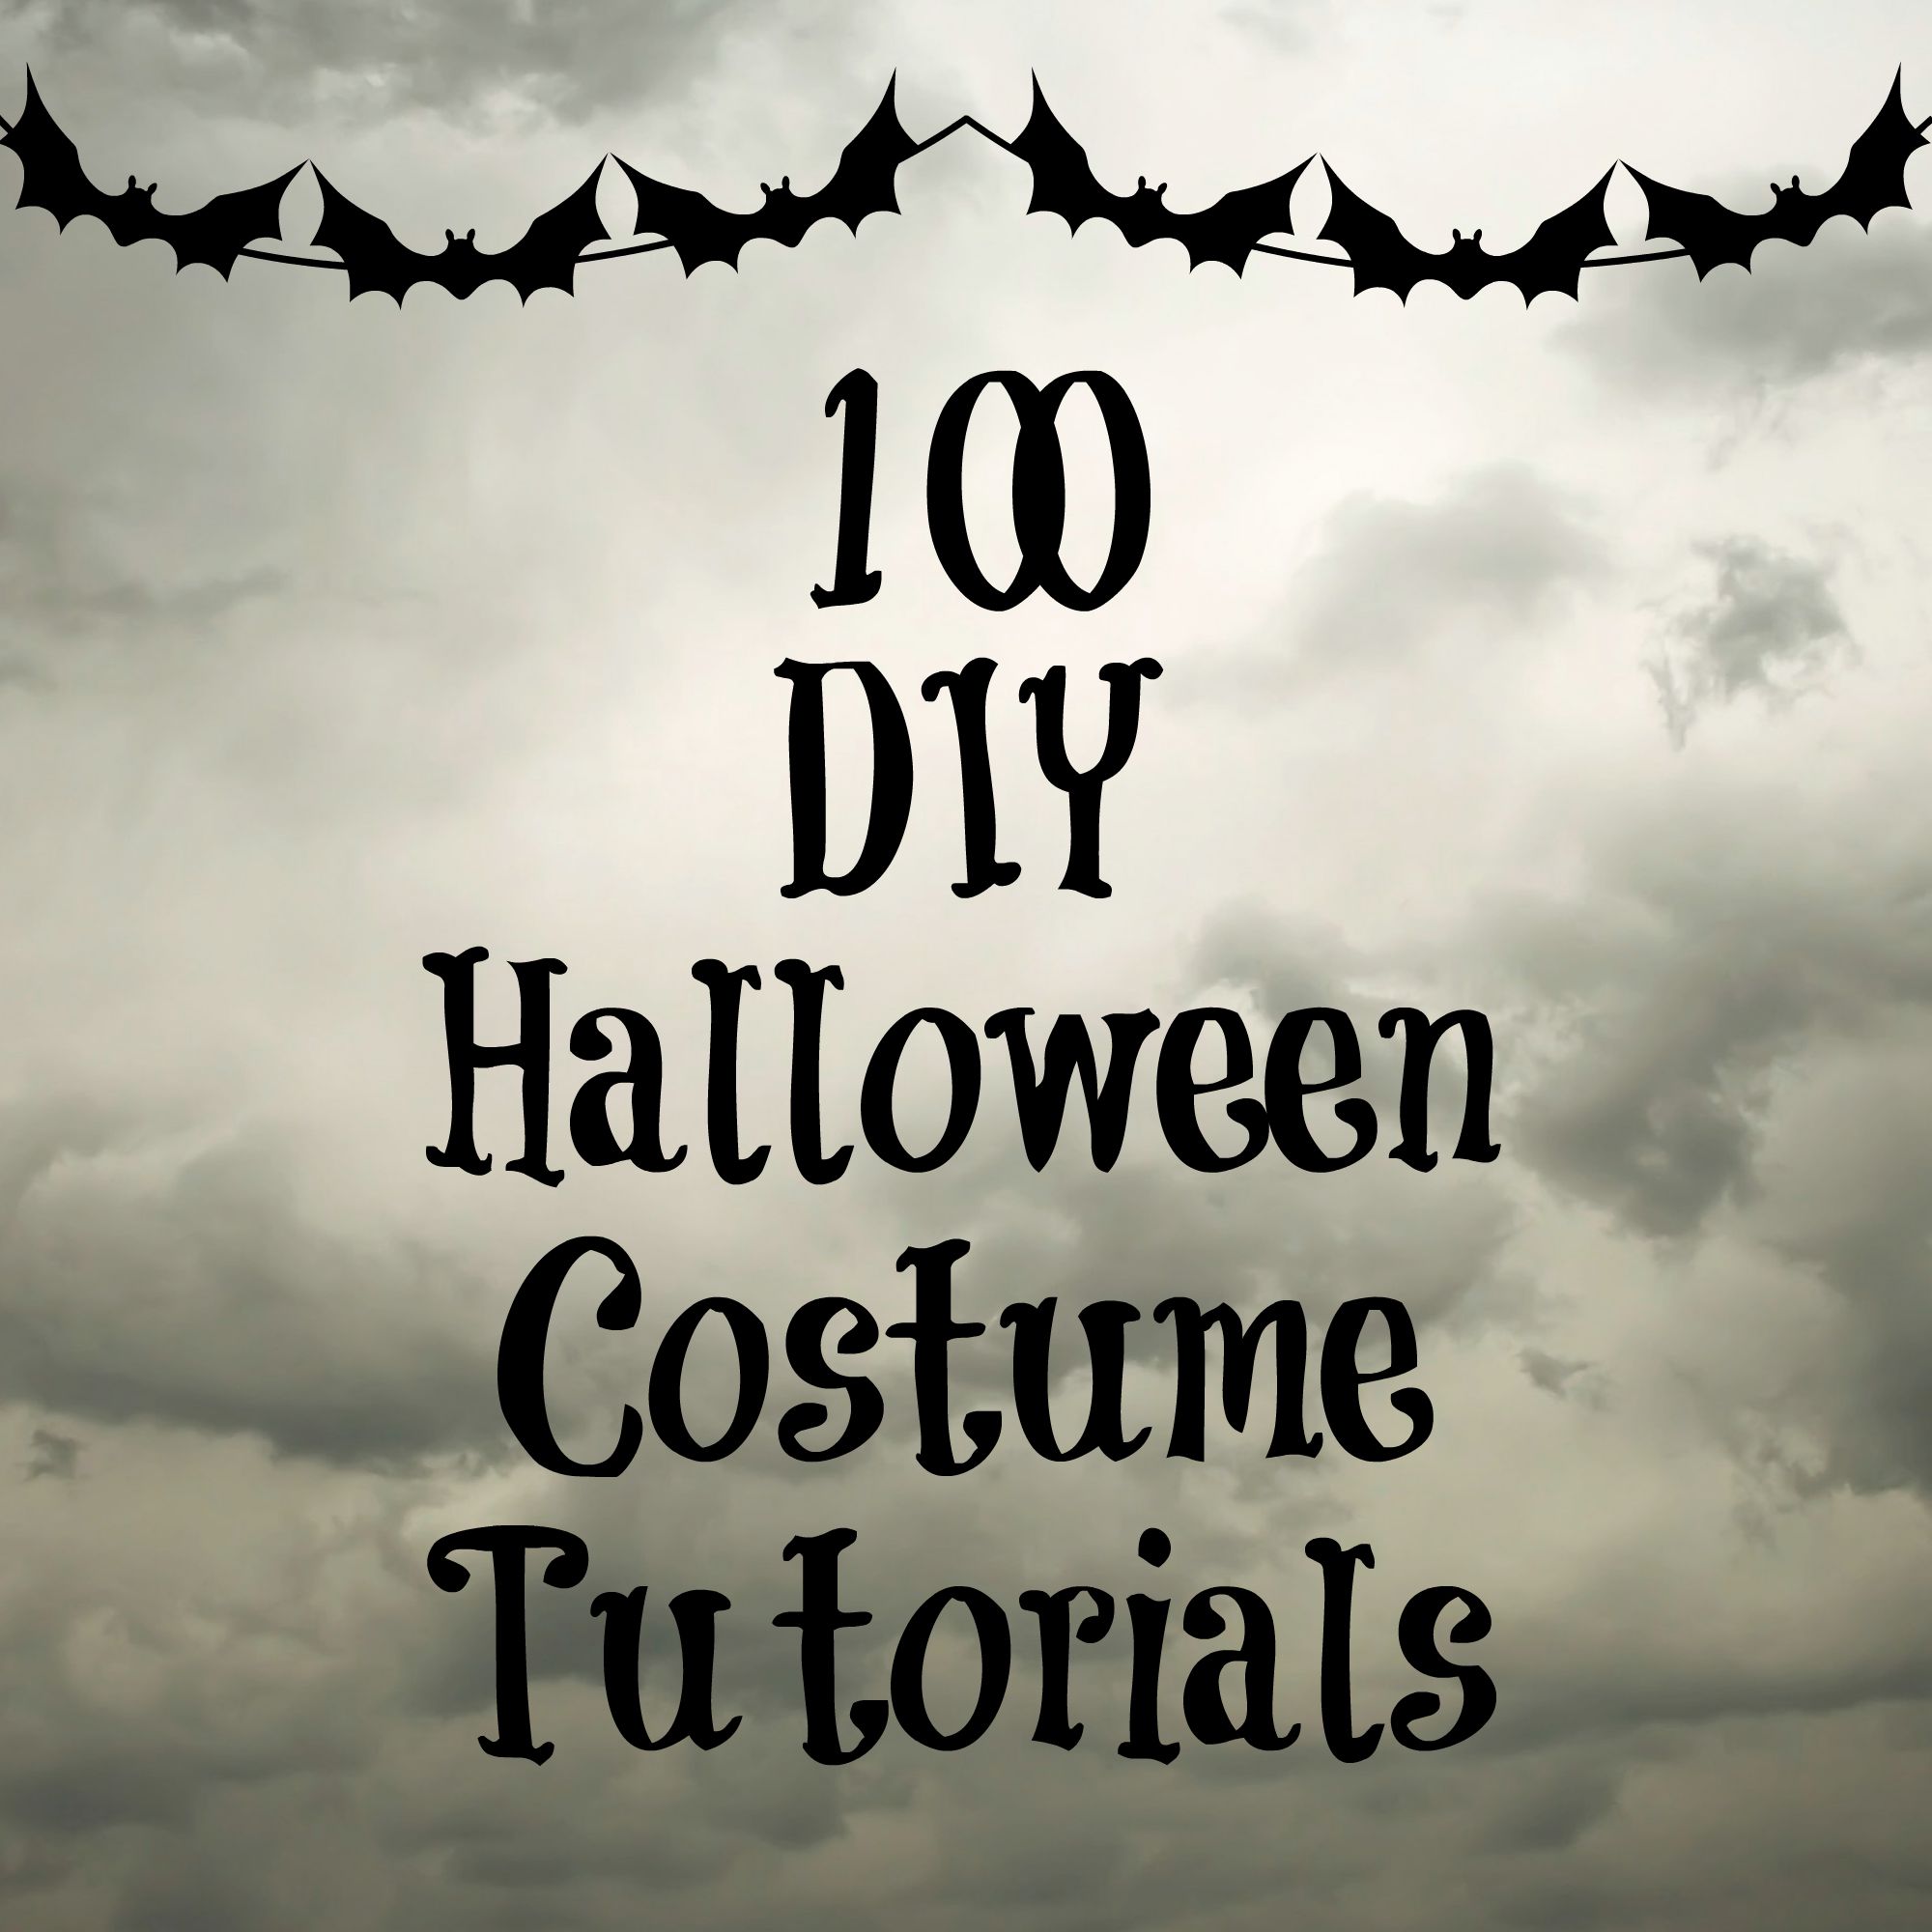 100 DIY Costume Tutorials